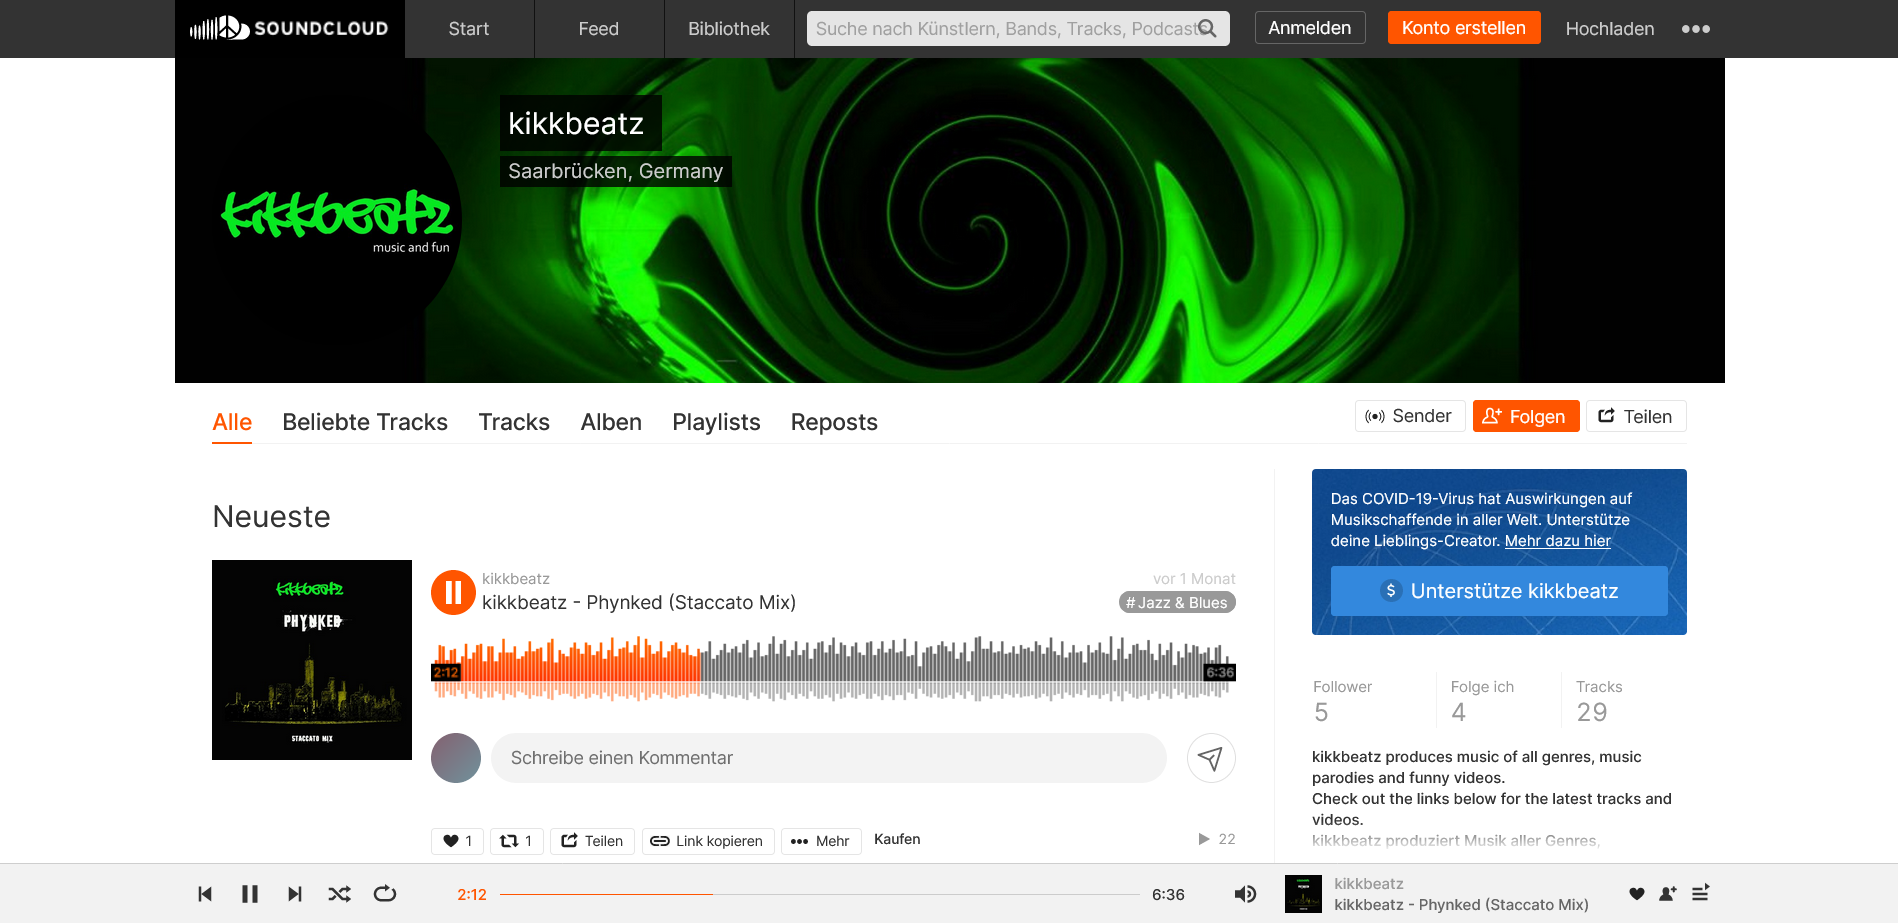 kikkbeatz on SoundCloud